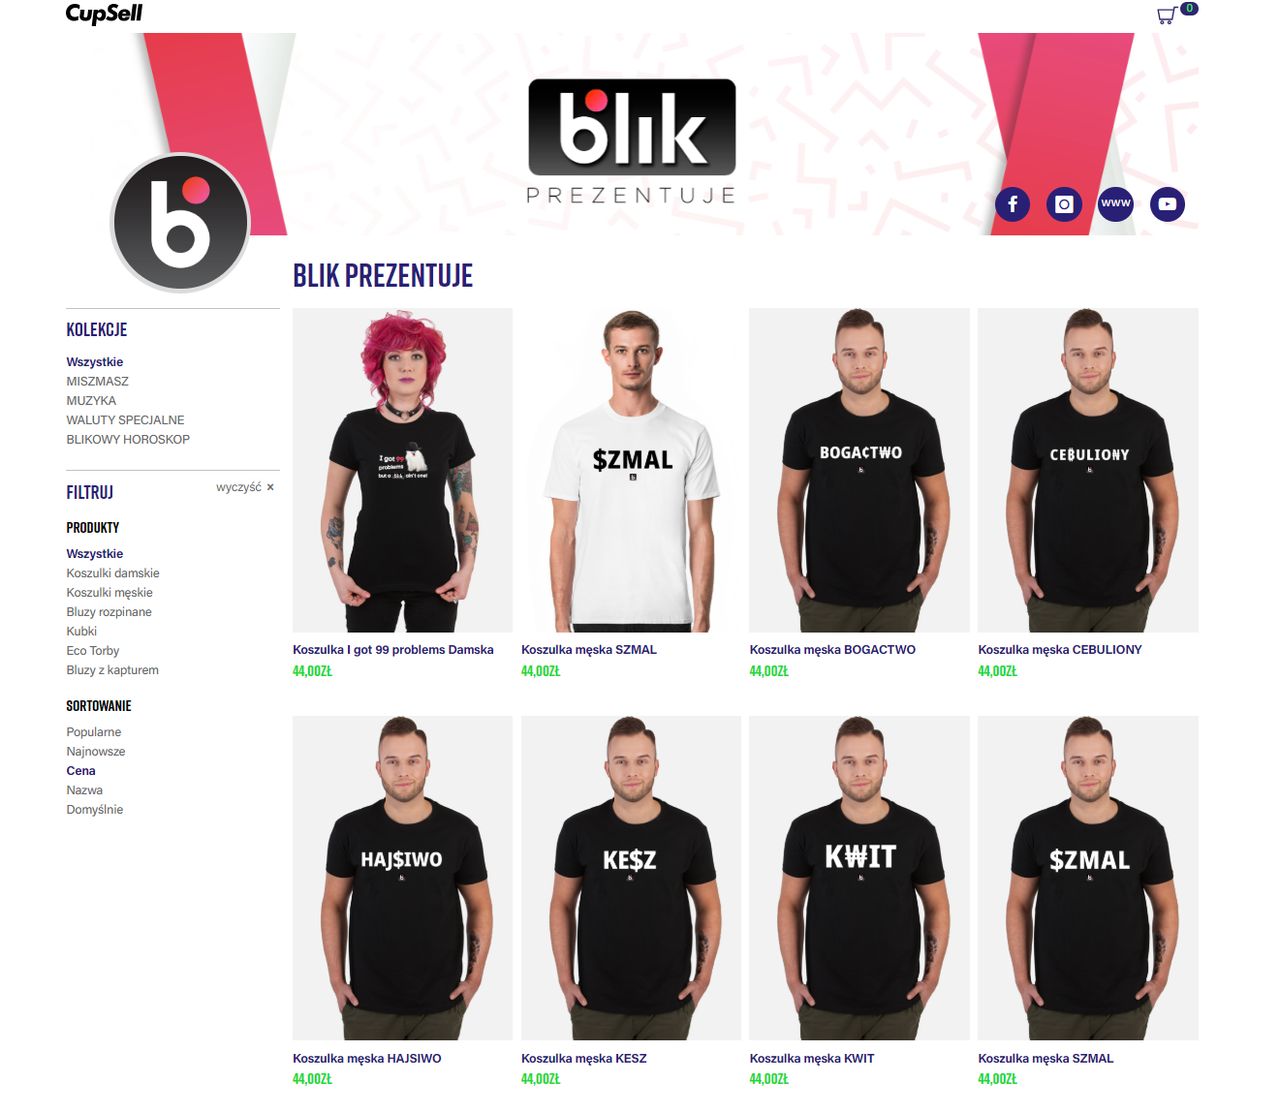 W internecie można kupi gadżety z logo BLIK-a, fot. Oskar Ziomek / sklep BLIK.